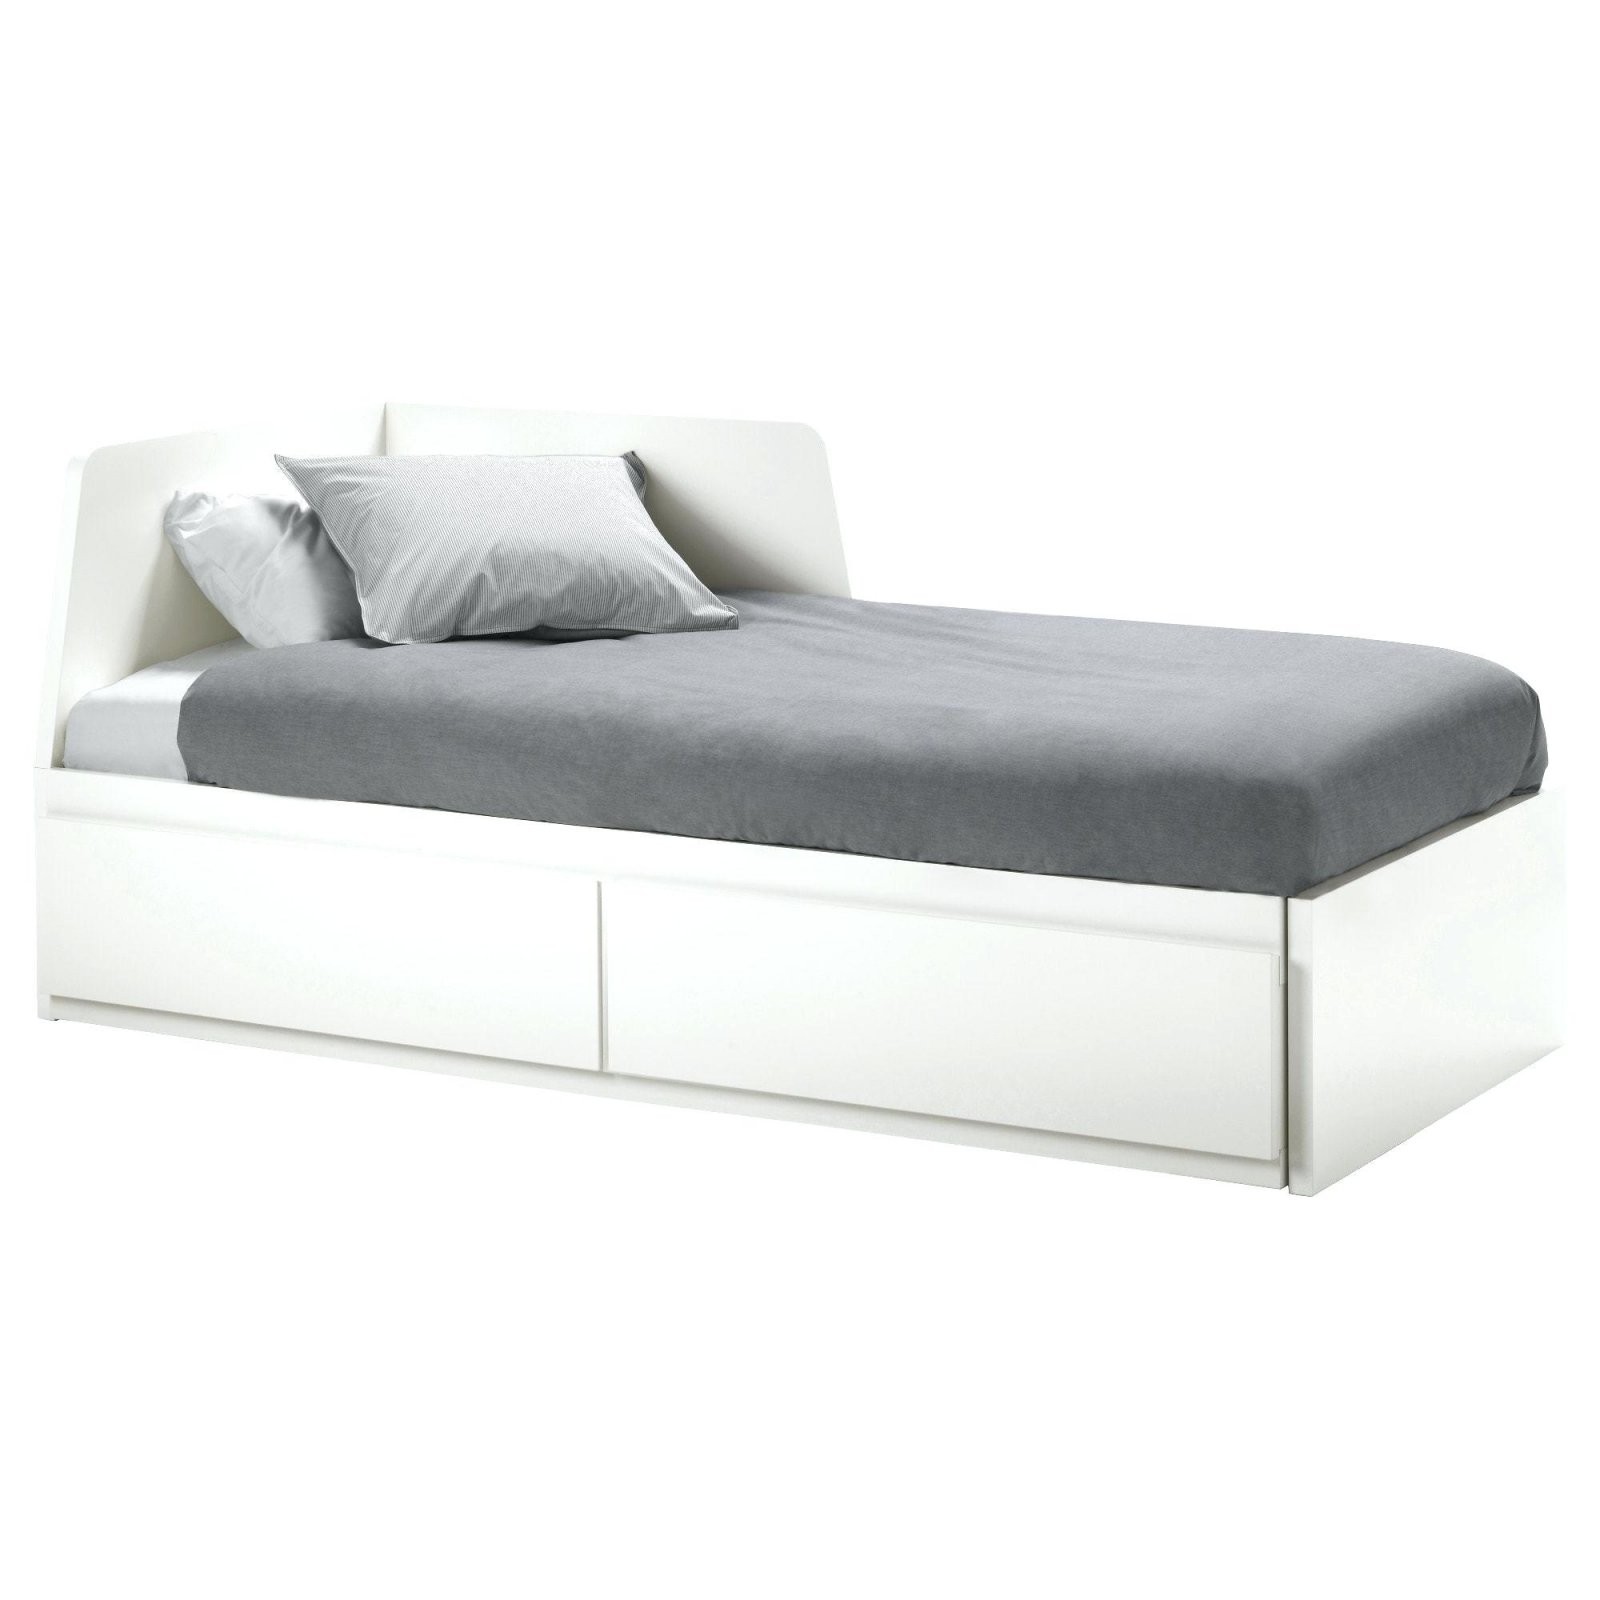 Das Ikea Bett  Übersicht Und Vergleich Des Schwedischen Bettes von Ikea Bett Weiß 140X200 Photo